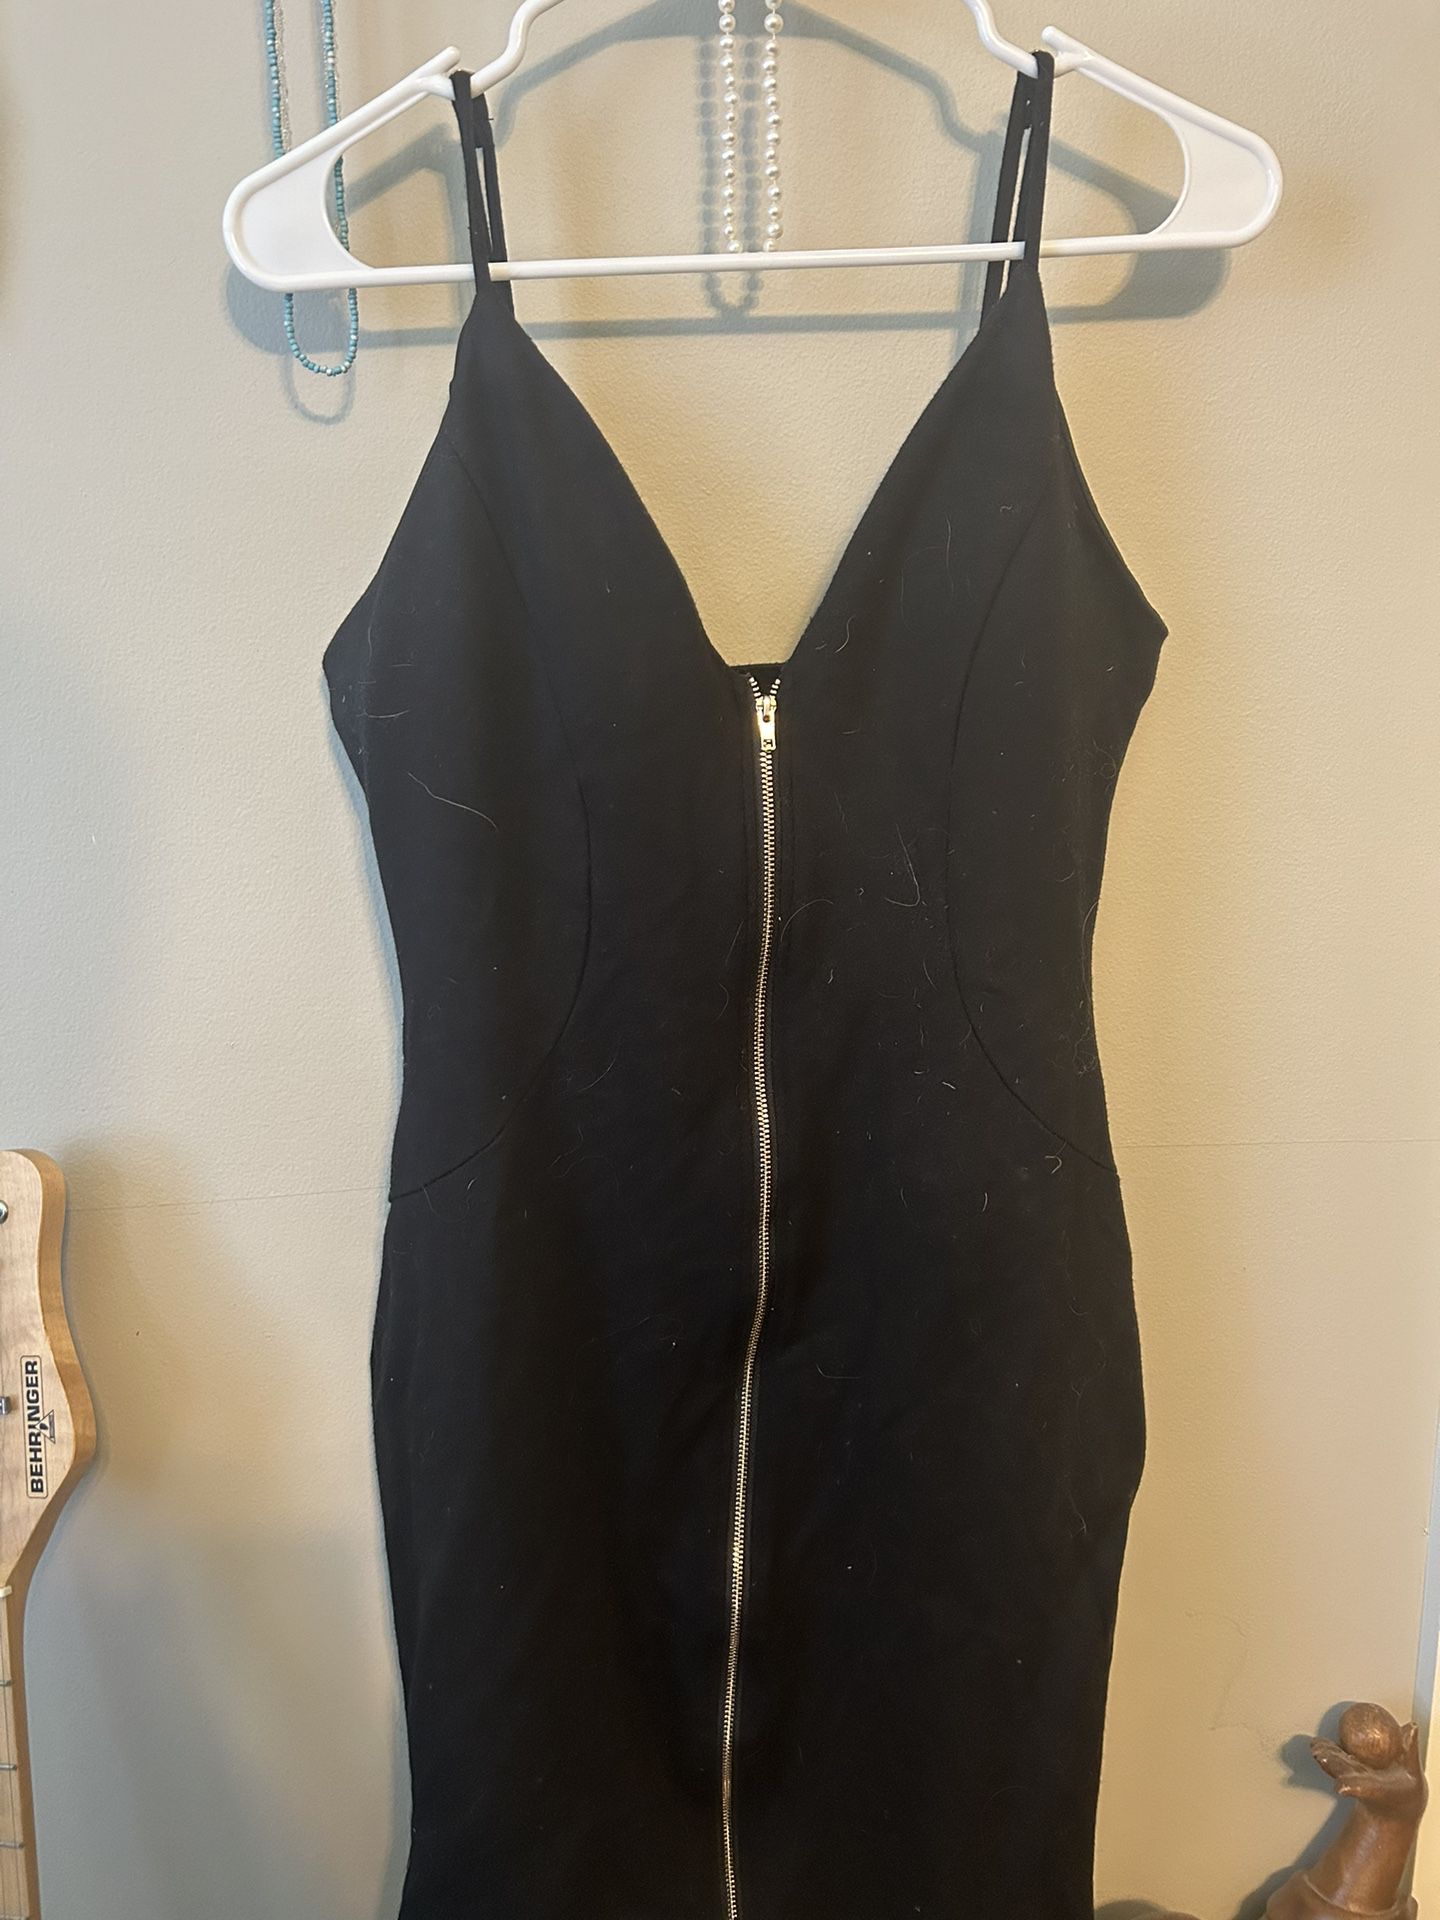 spaghetti strap body-con black zip up dress